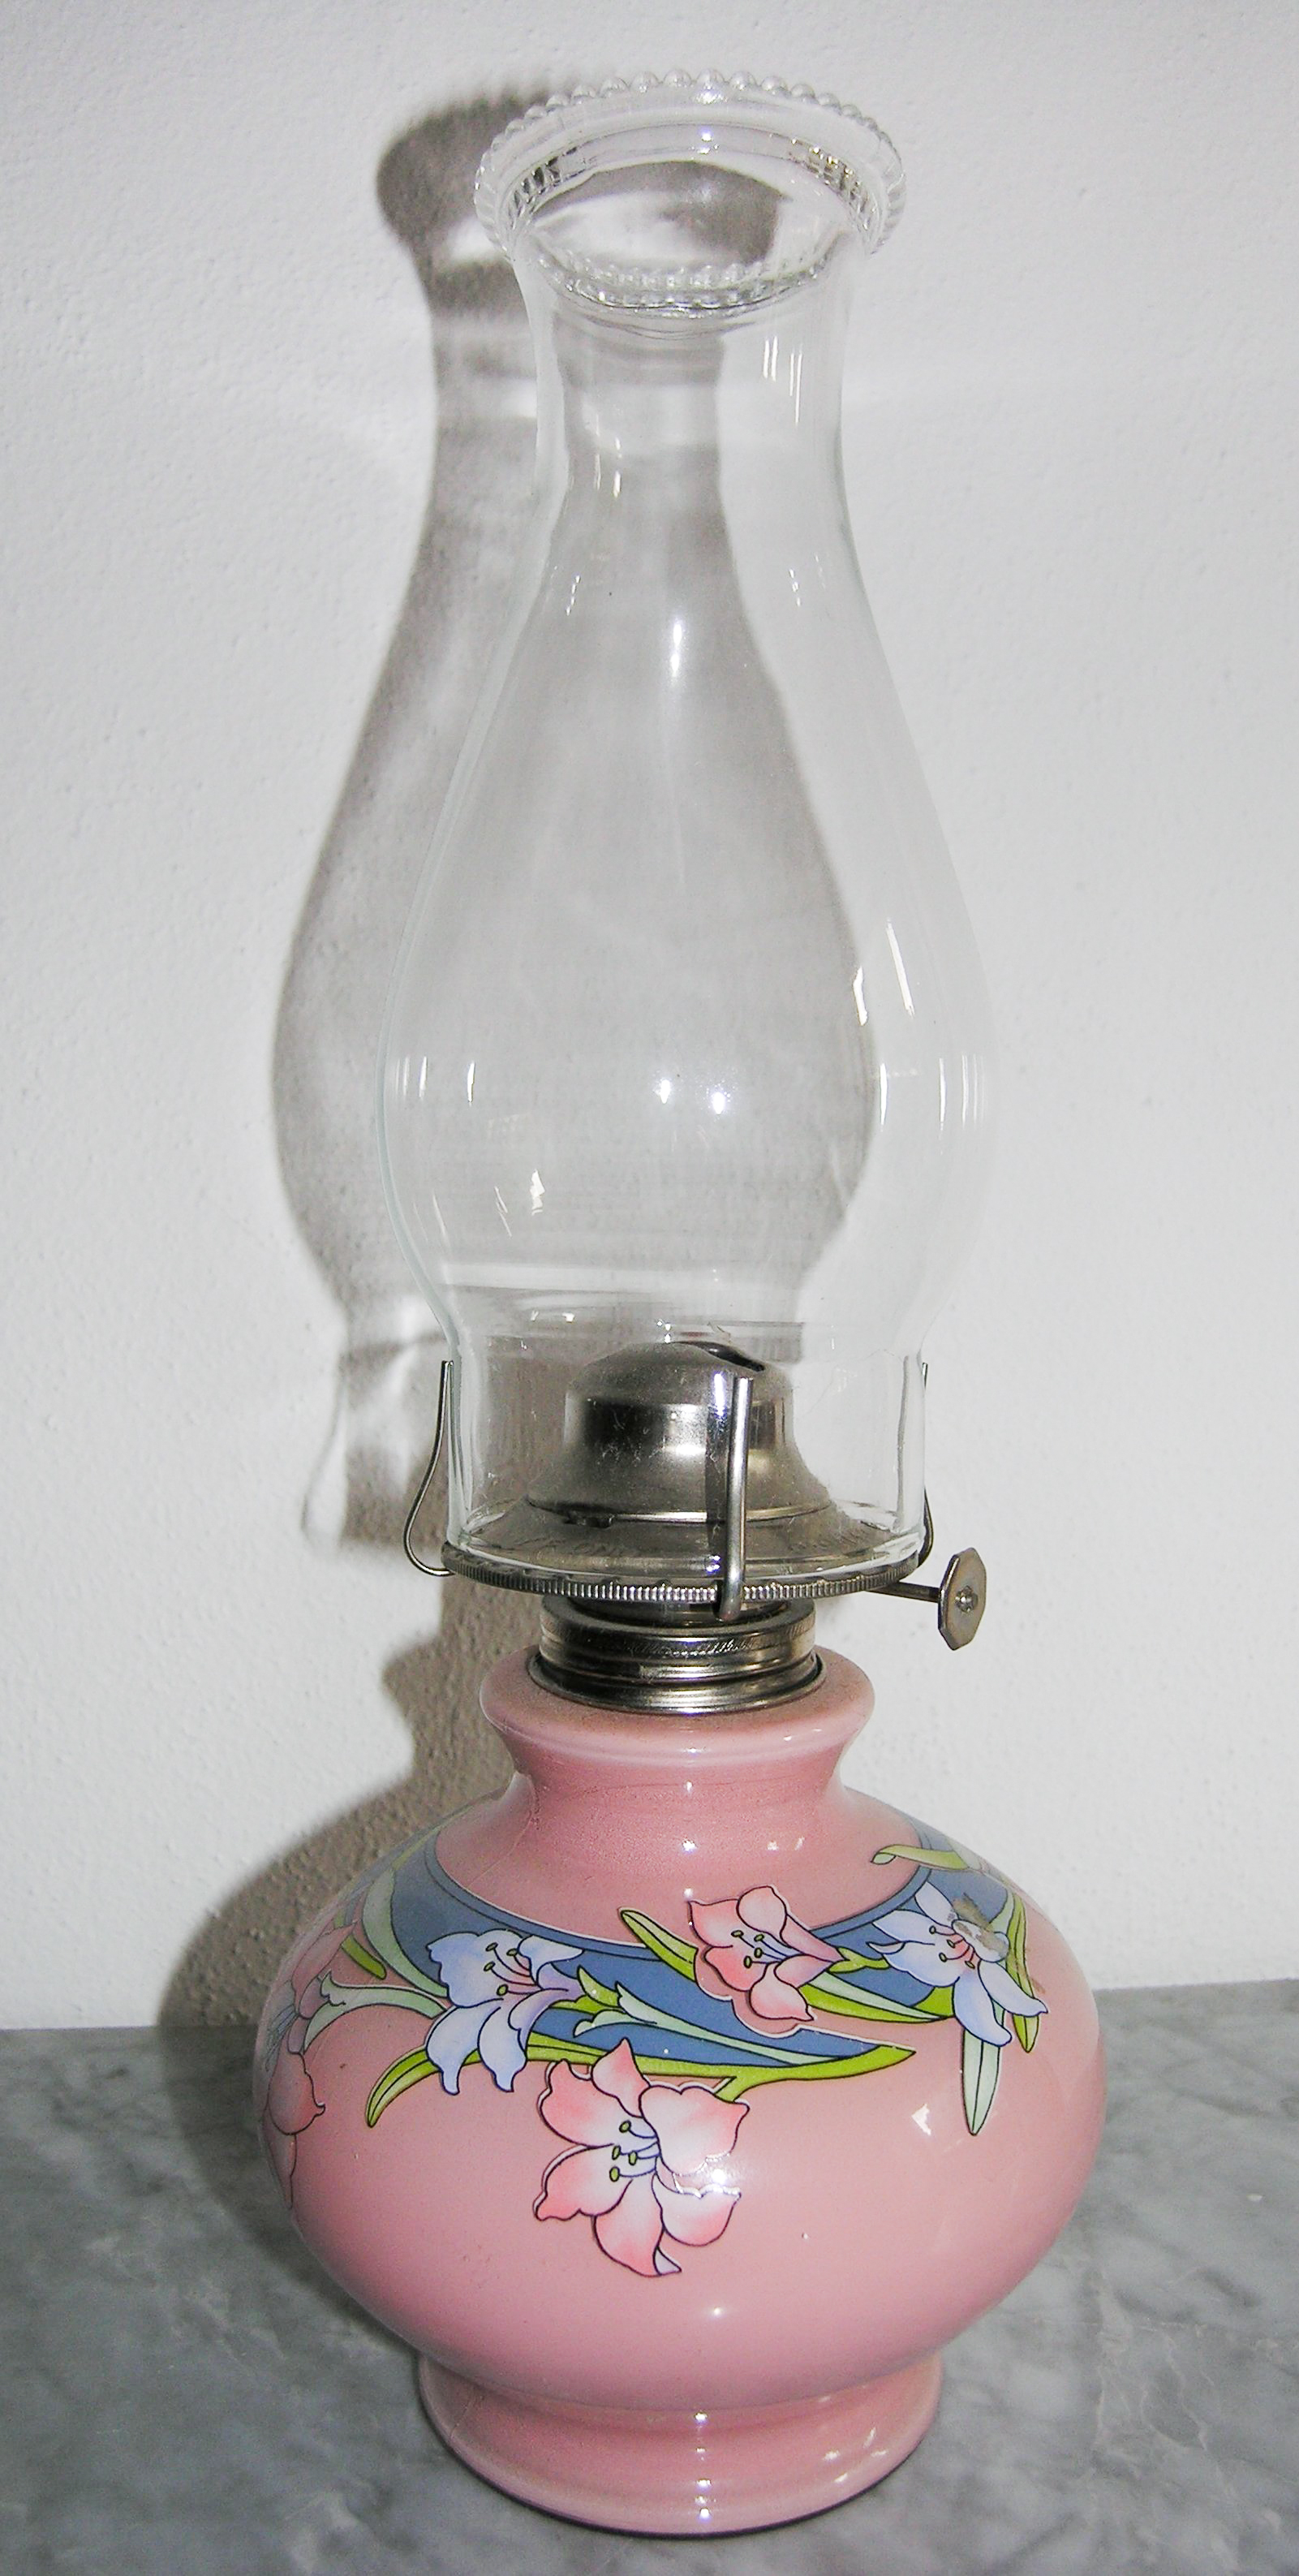 Hurricane Lamp  Ceramic /& Glass